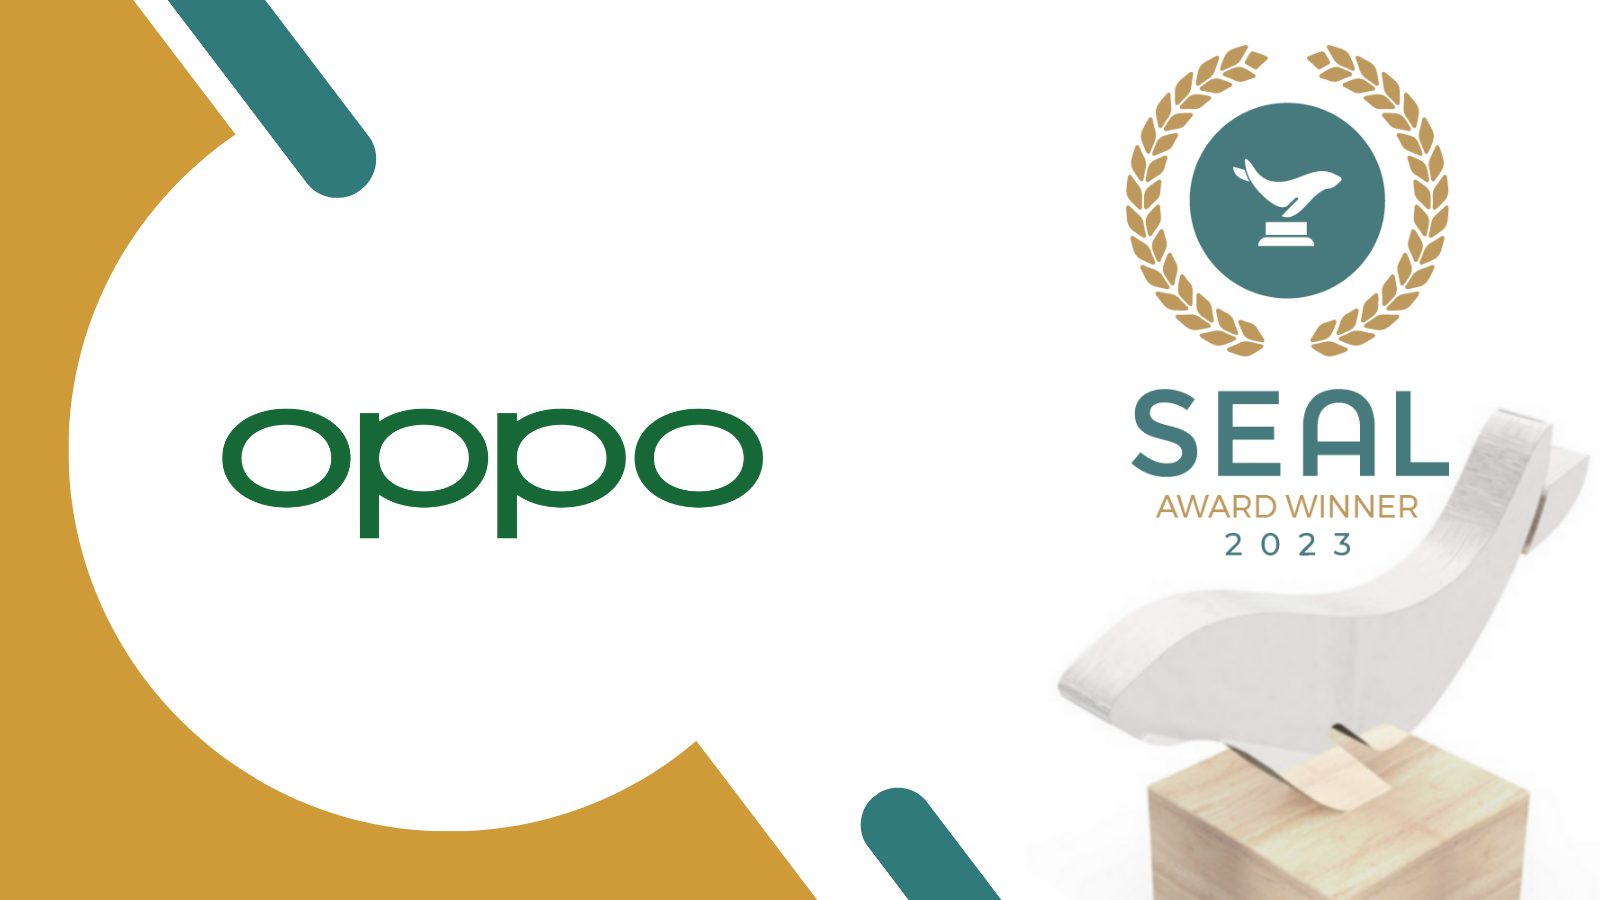 Foto de Battery Health Engine de OPPO es el mejor producto sustentable de los SEAL Awards 2023 gracias a sus innovaciones ecológicas